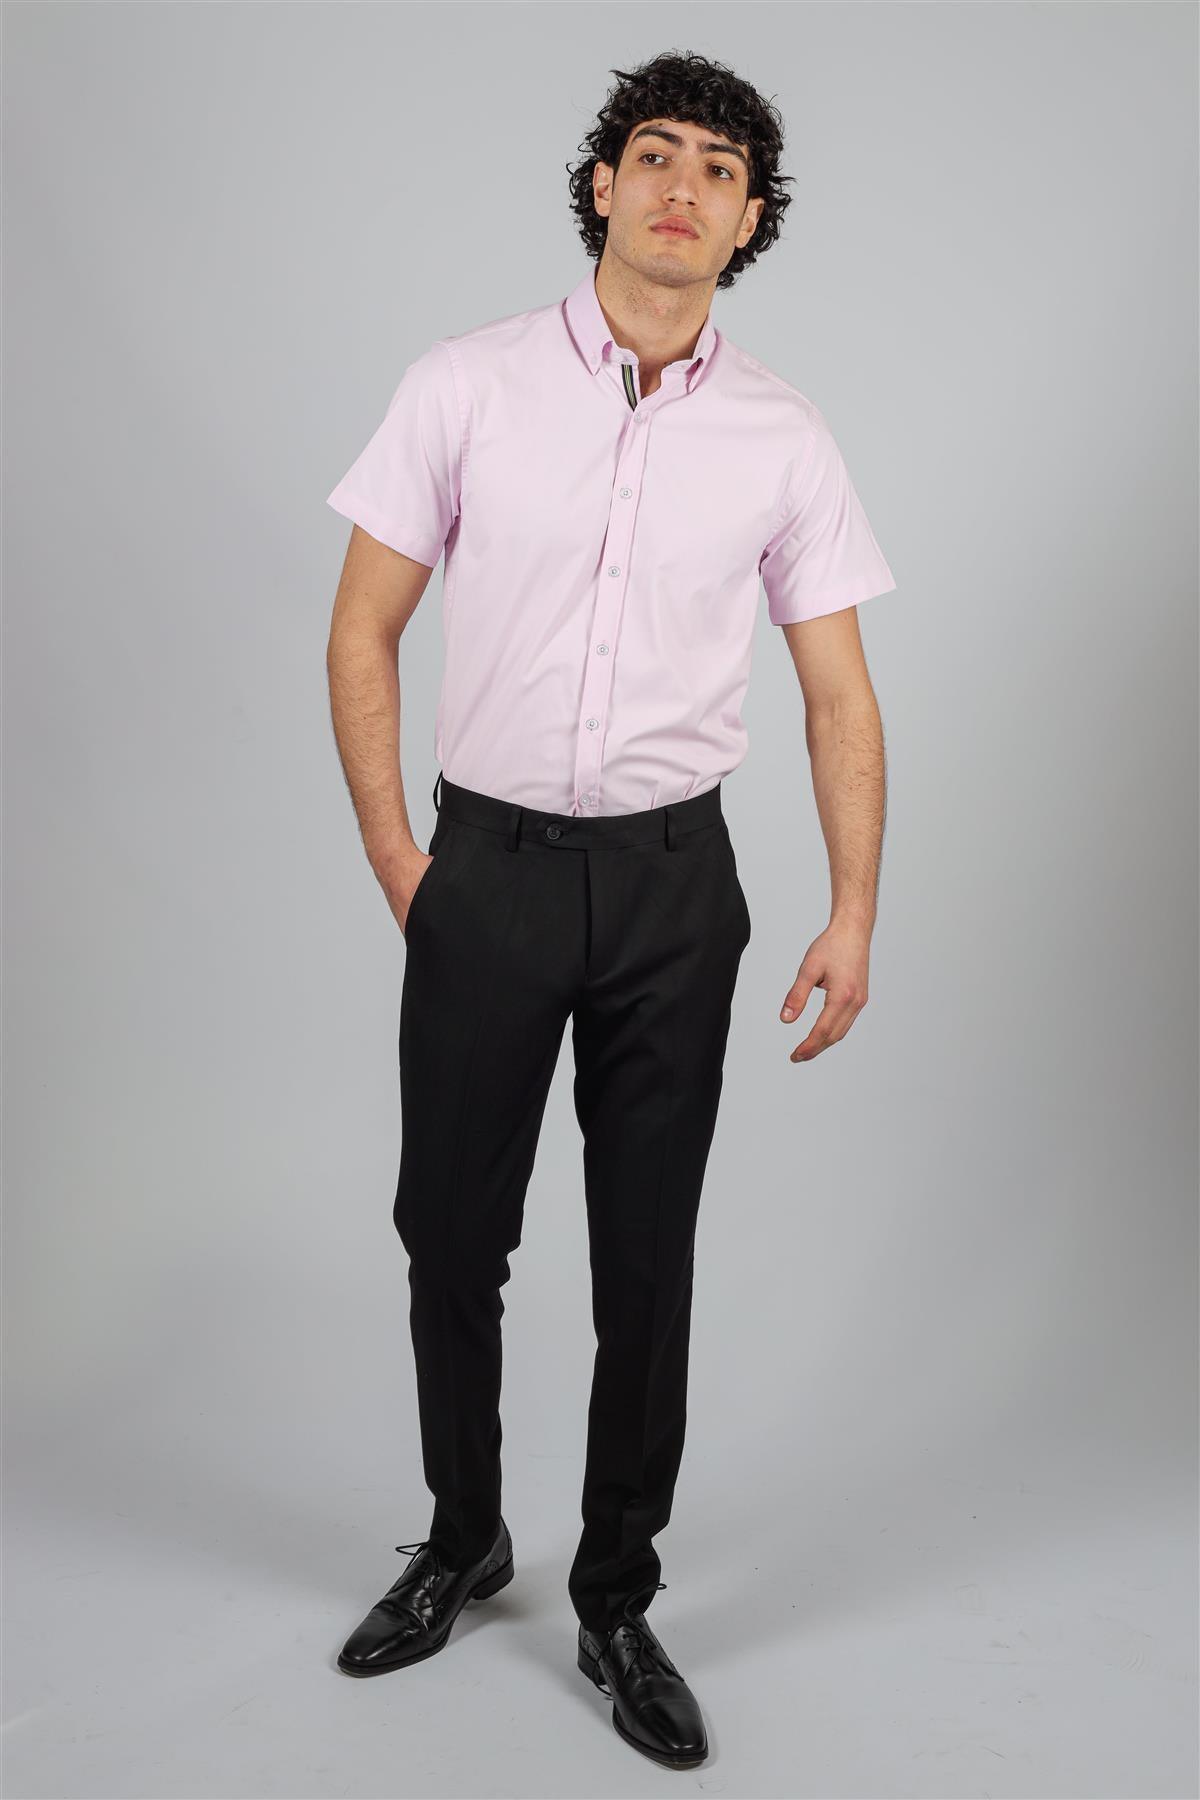 Vito pink short sleeve shirt front